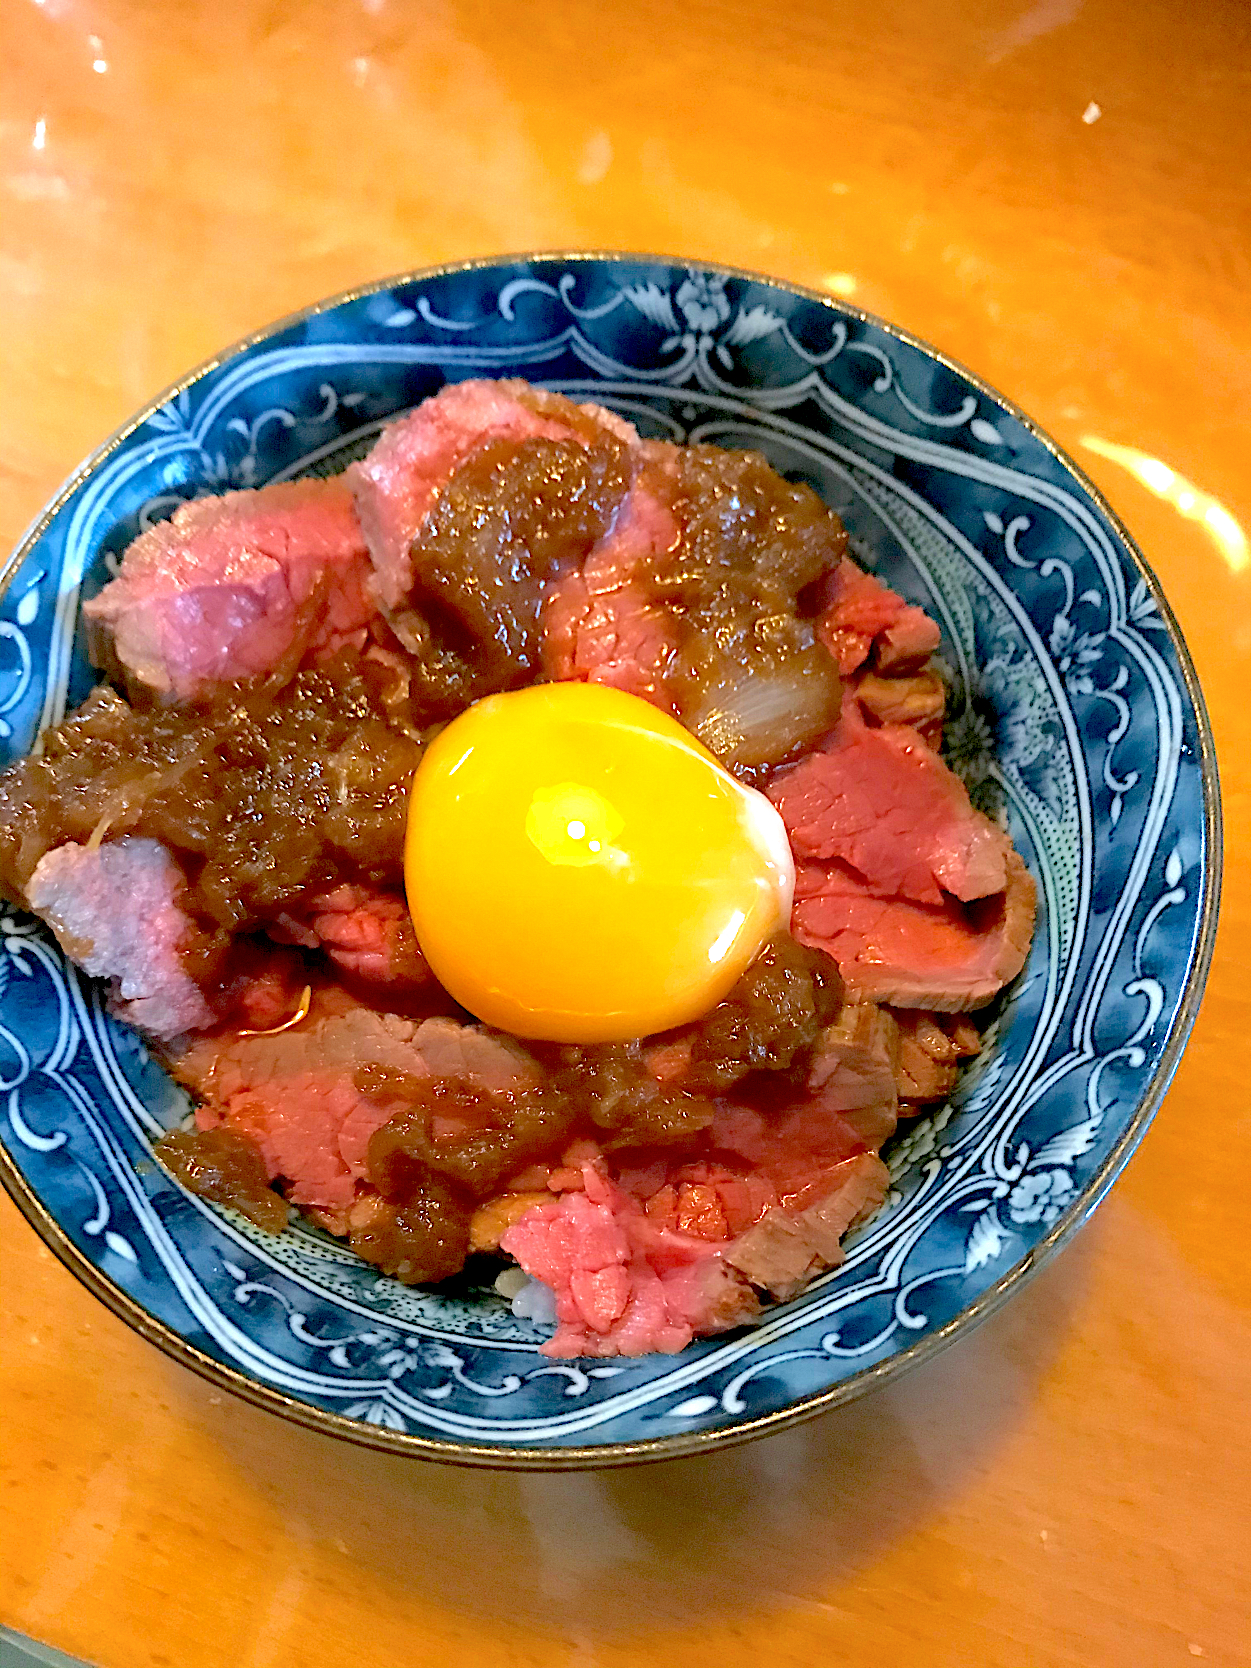 ローストビーフ丼